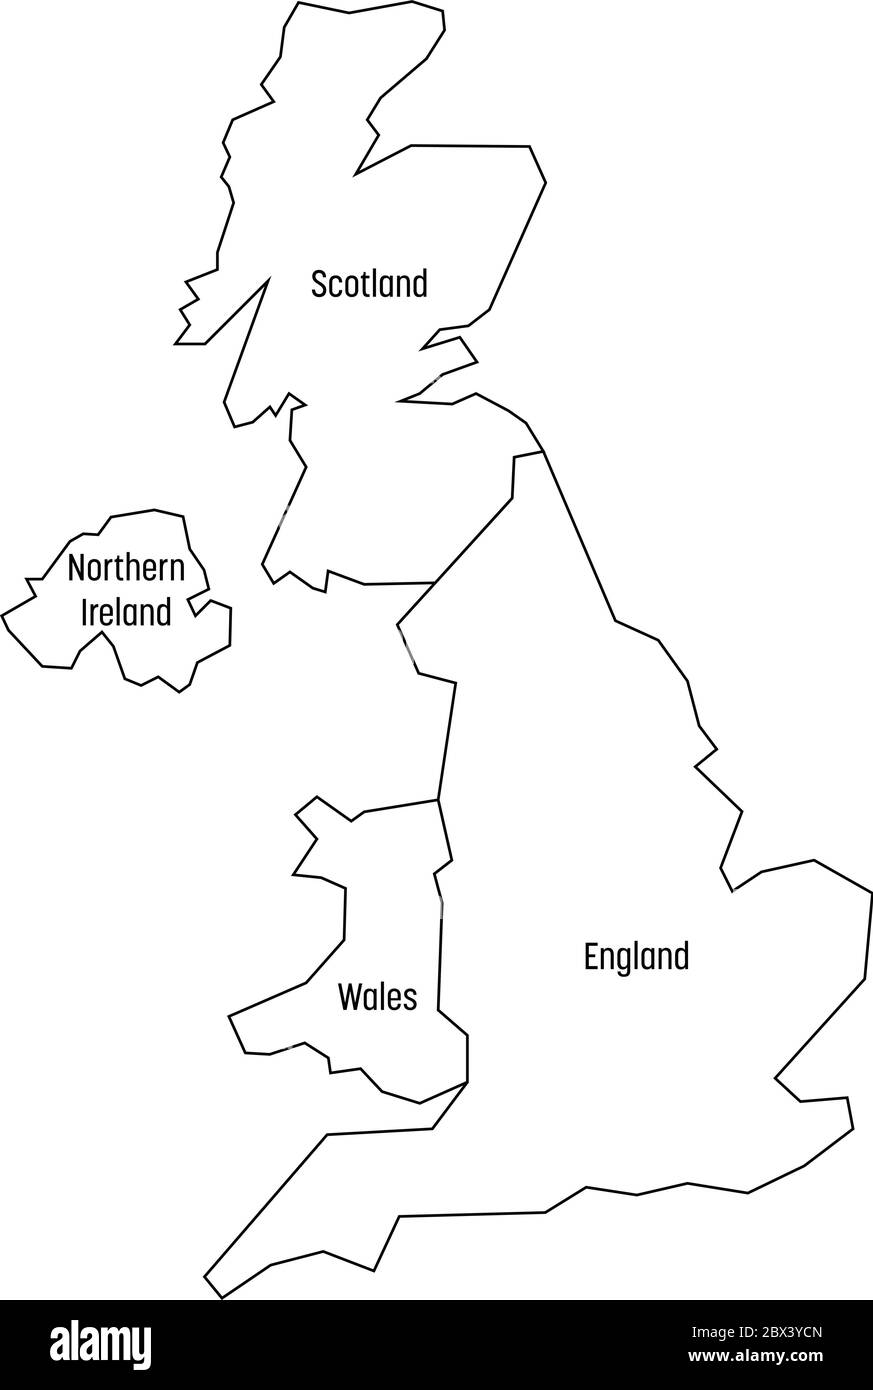 Karte Von Grossbritannien Lander England Wales Schottland Und Nordirland Einfache Flache Vektor Umrisskarte Mit Beschriftungen Stock Vektorgrafik Alamy